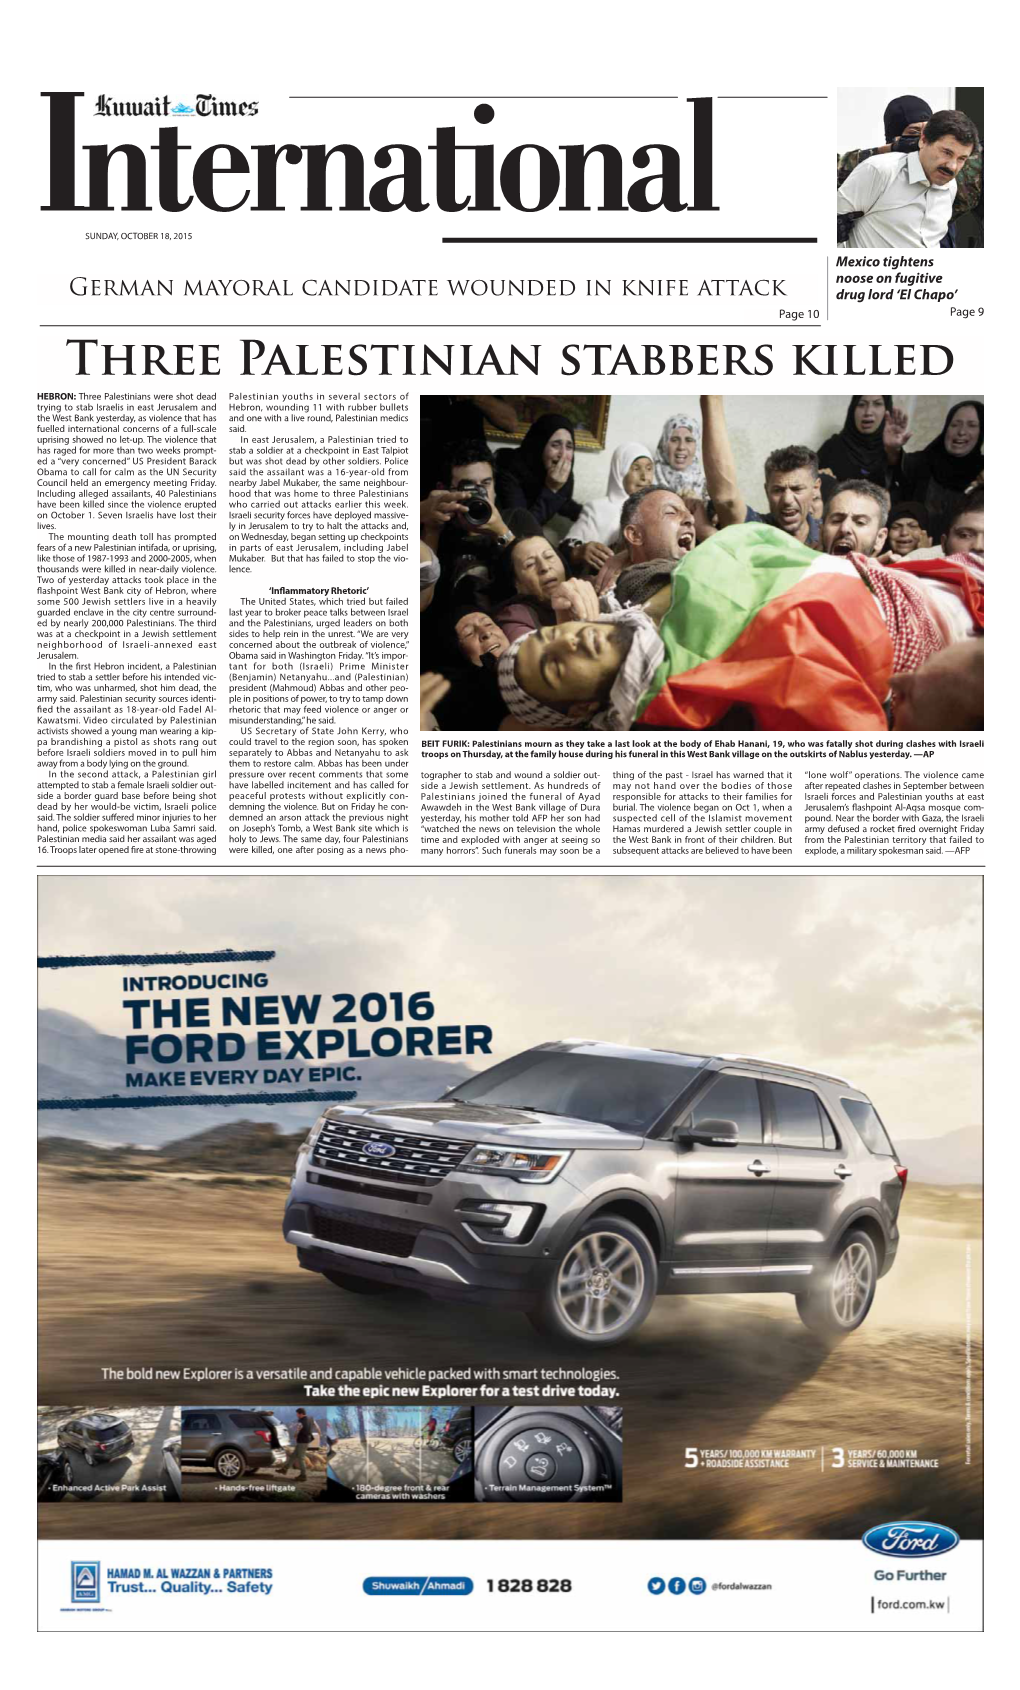 Three Palestinian Stabbers Killed